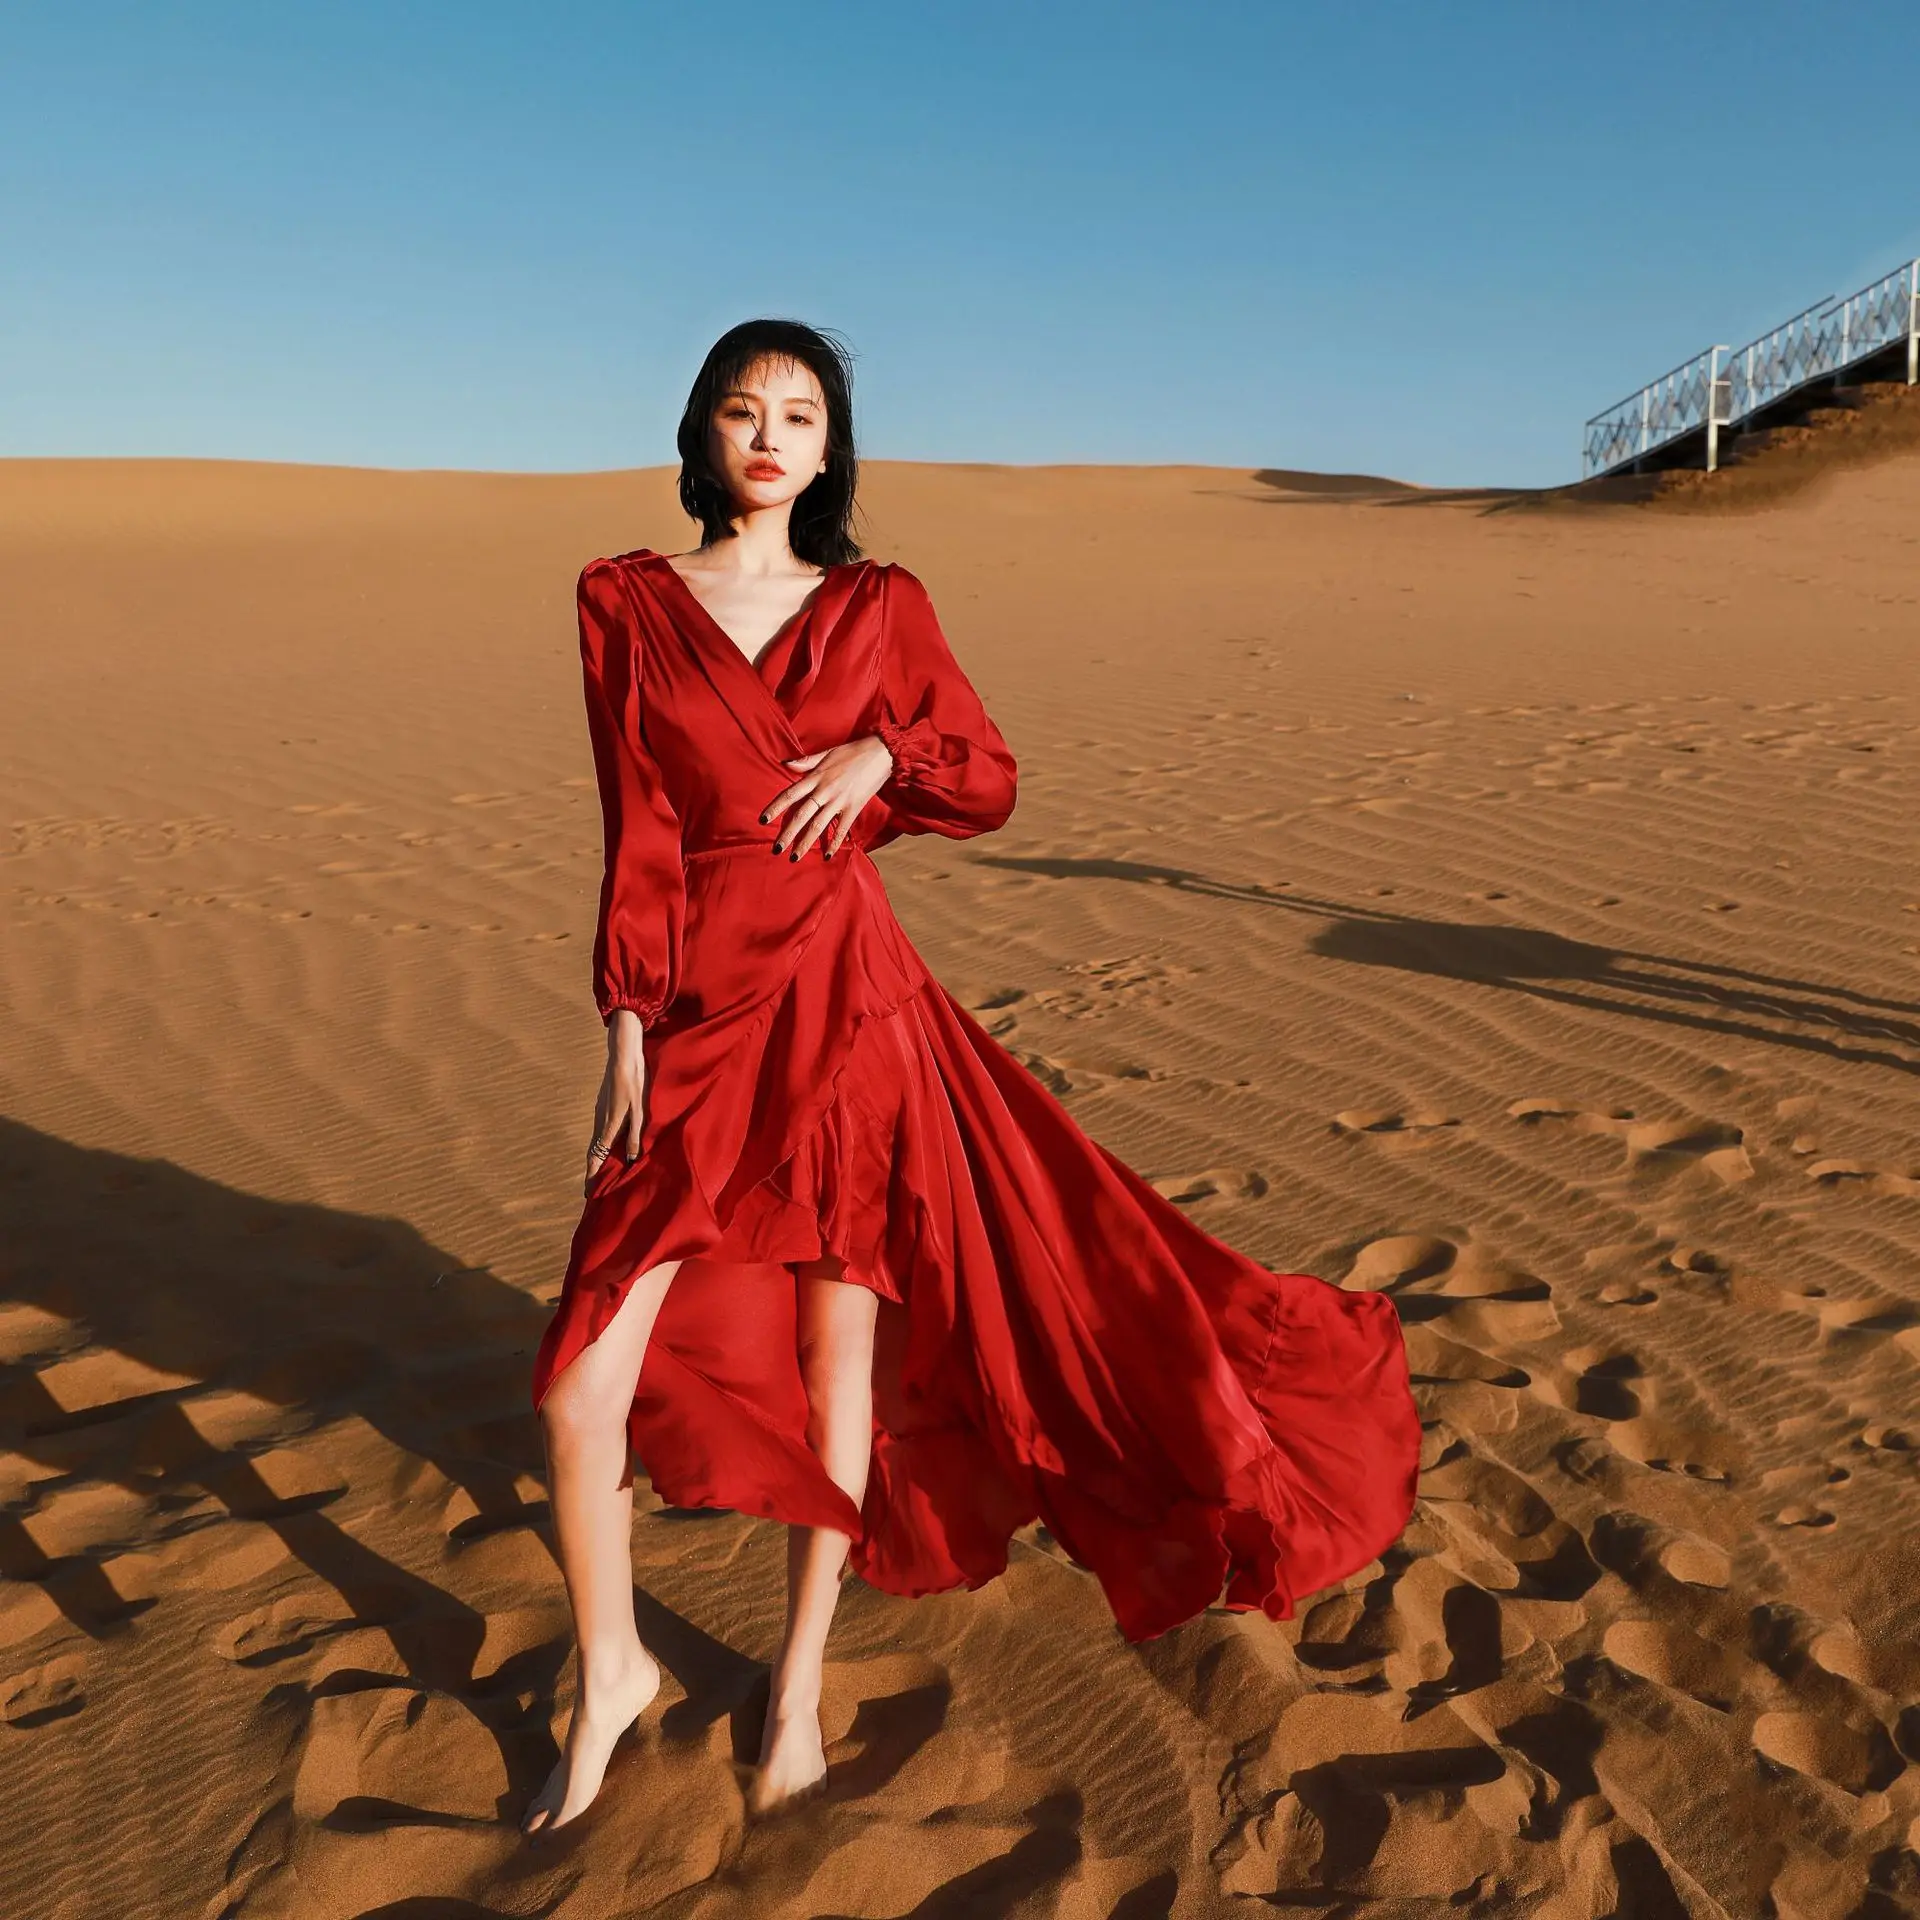 

Dubai Morocco Travel Photography Desert Red Dress Tibet Qinghai Lake Seaside Vacation Long Skirt Goddess Halter Dress